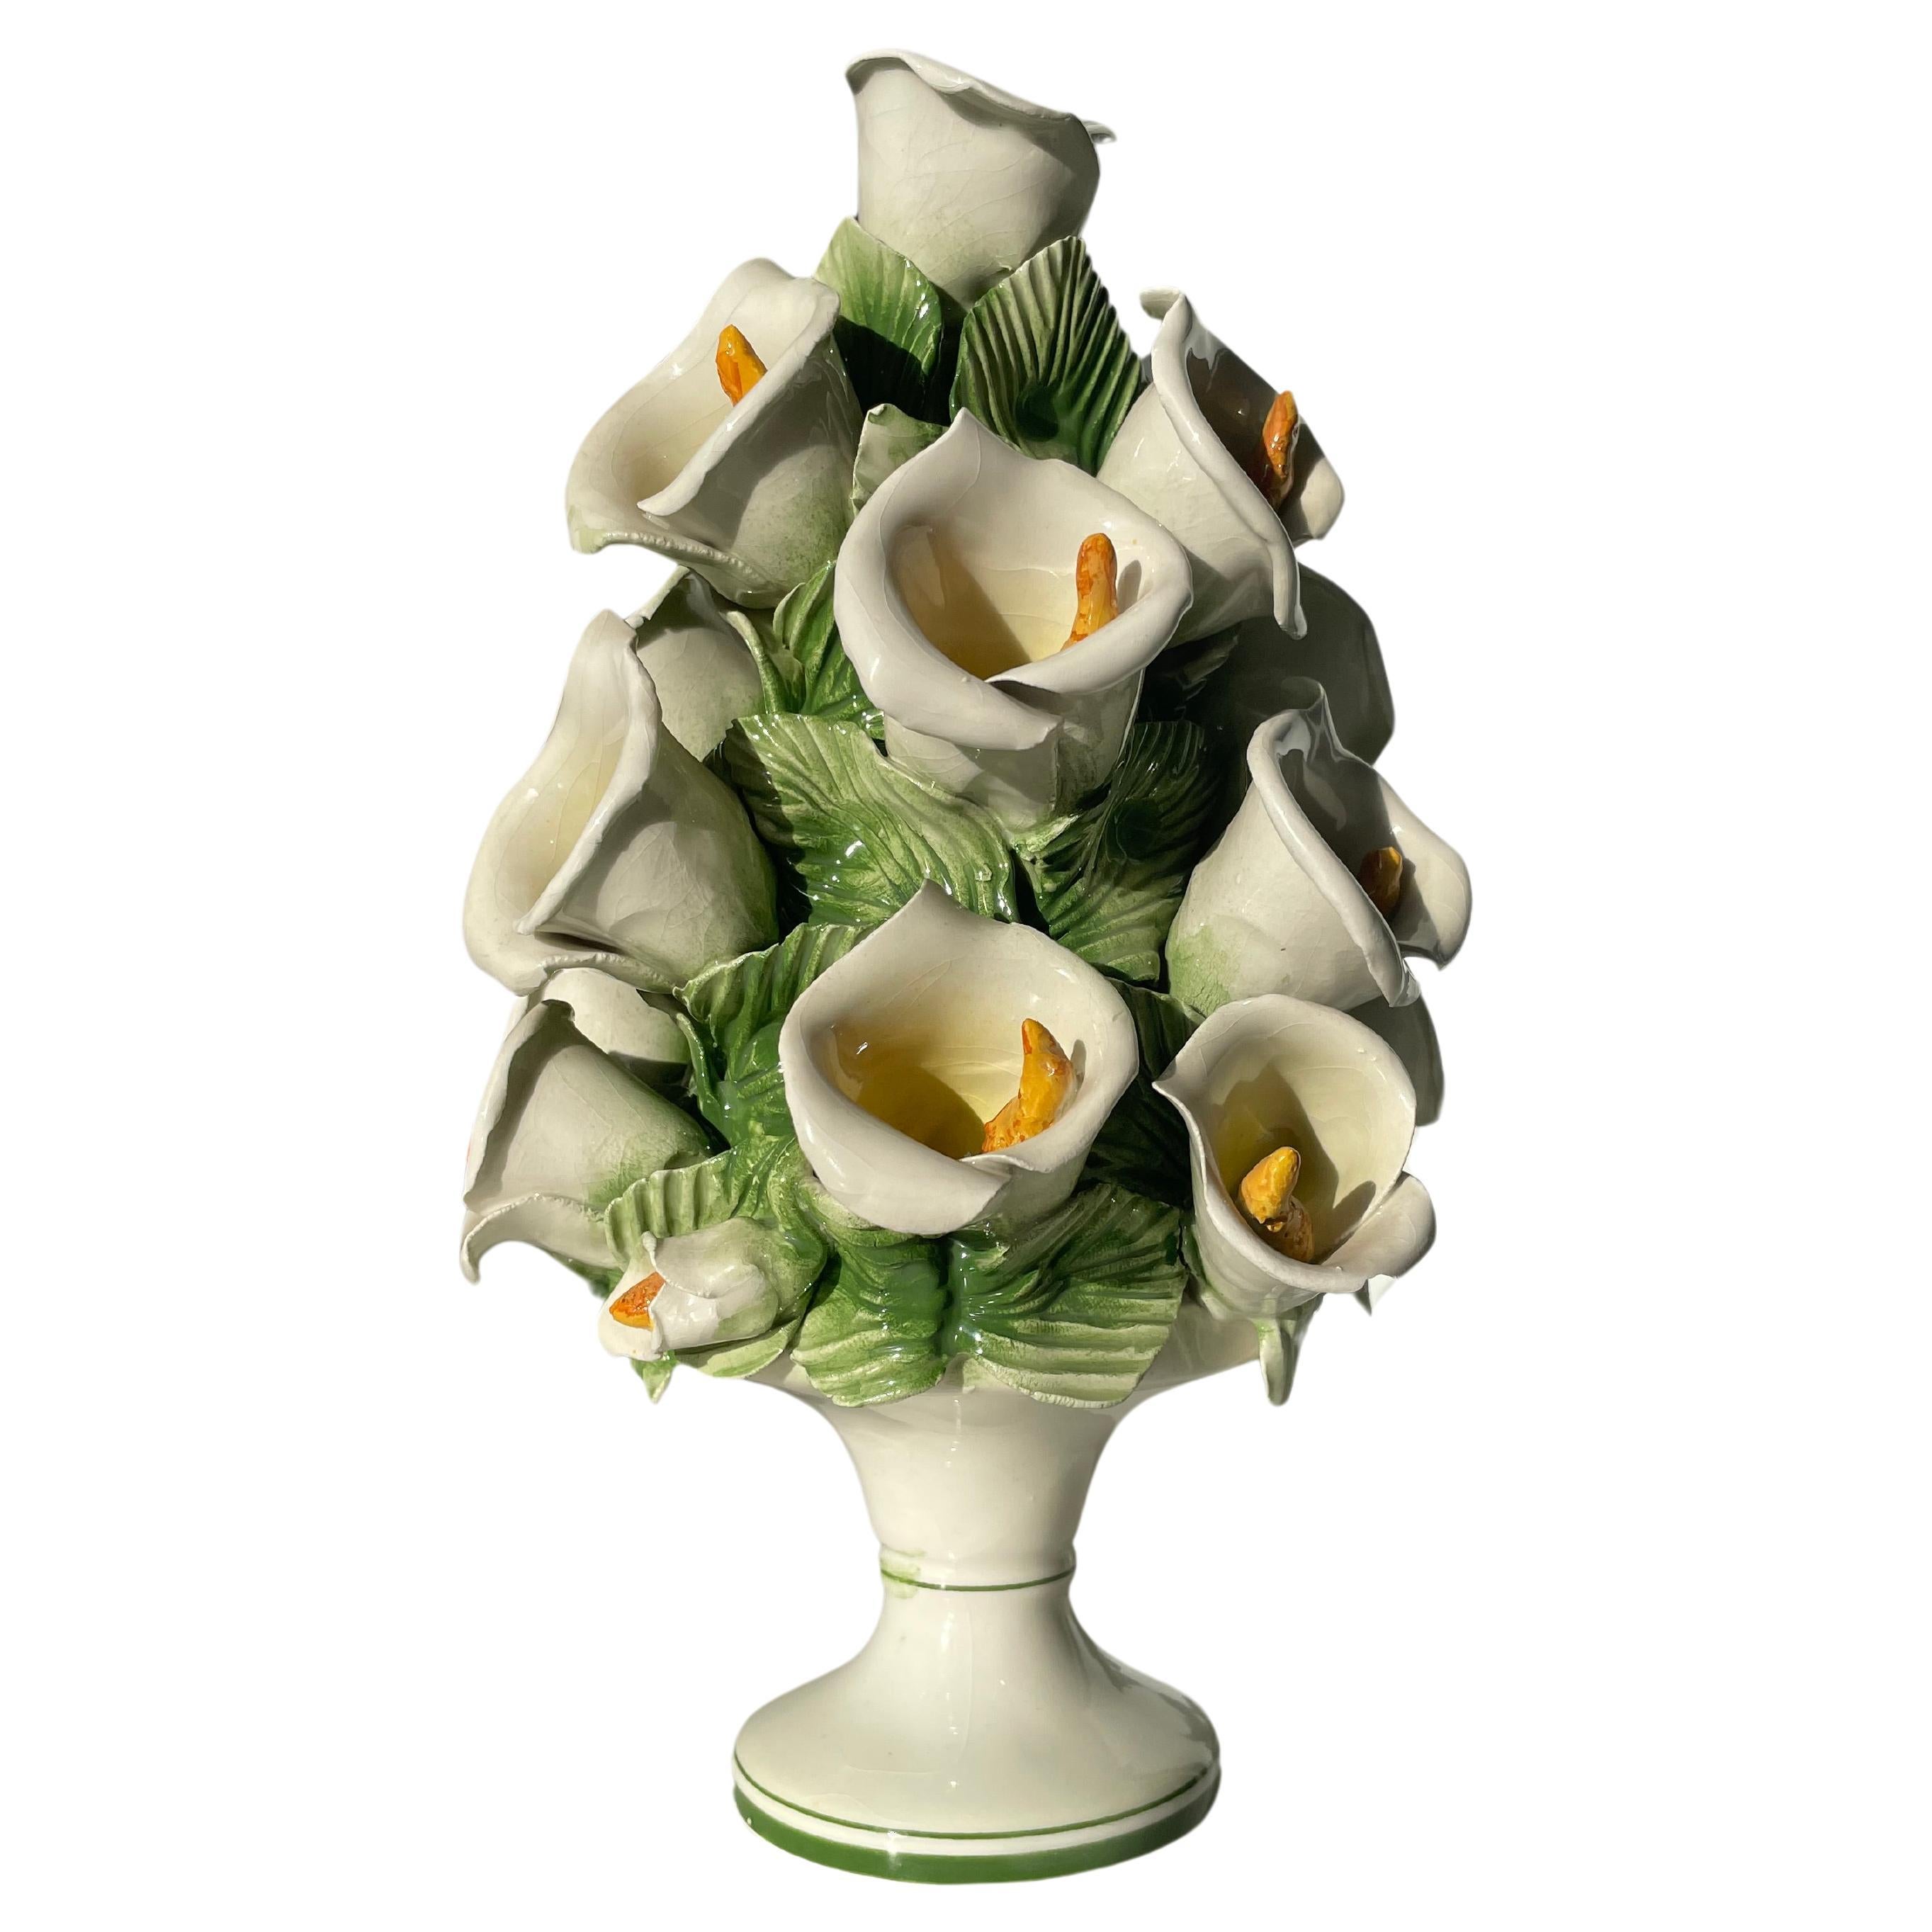 Vintage Italian delikat handgefertigte skulpturale organische florale Regency-Stil Porzellanfigurine. Mehrere große naturalistische weiße und gelbe Calas in verschiedenen Blühstadien, umgeben von grünen Blättern, stehen in einem pyramidenförmigen